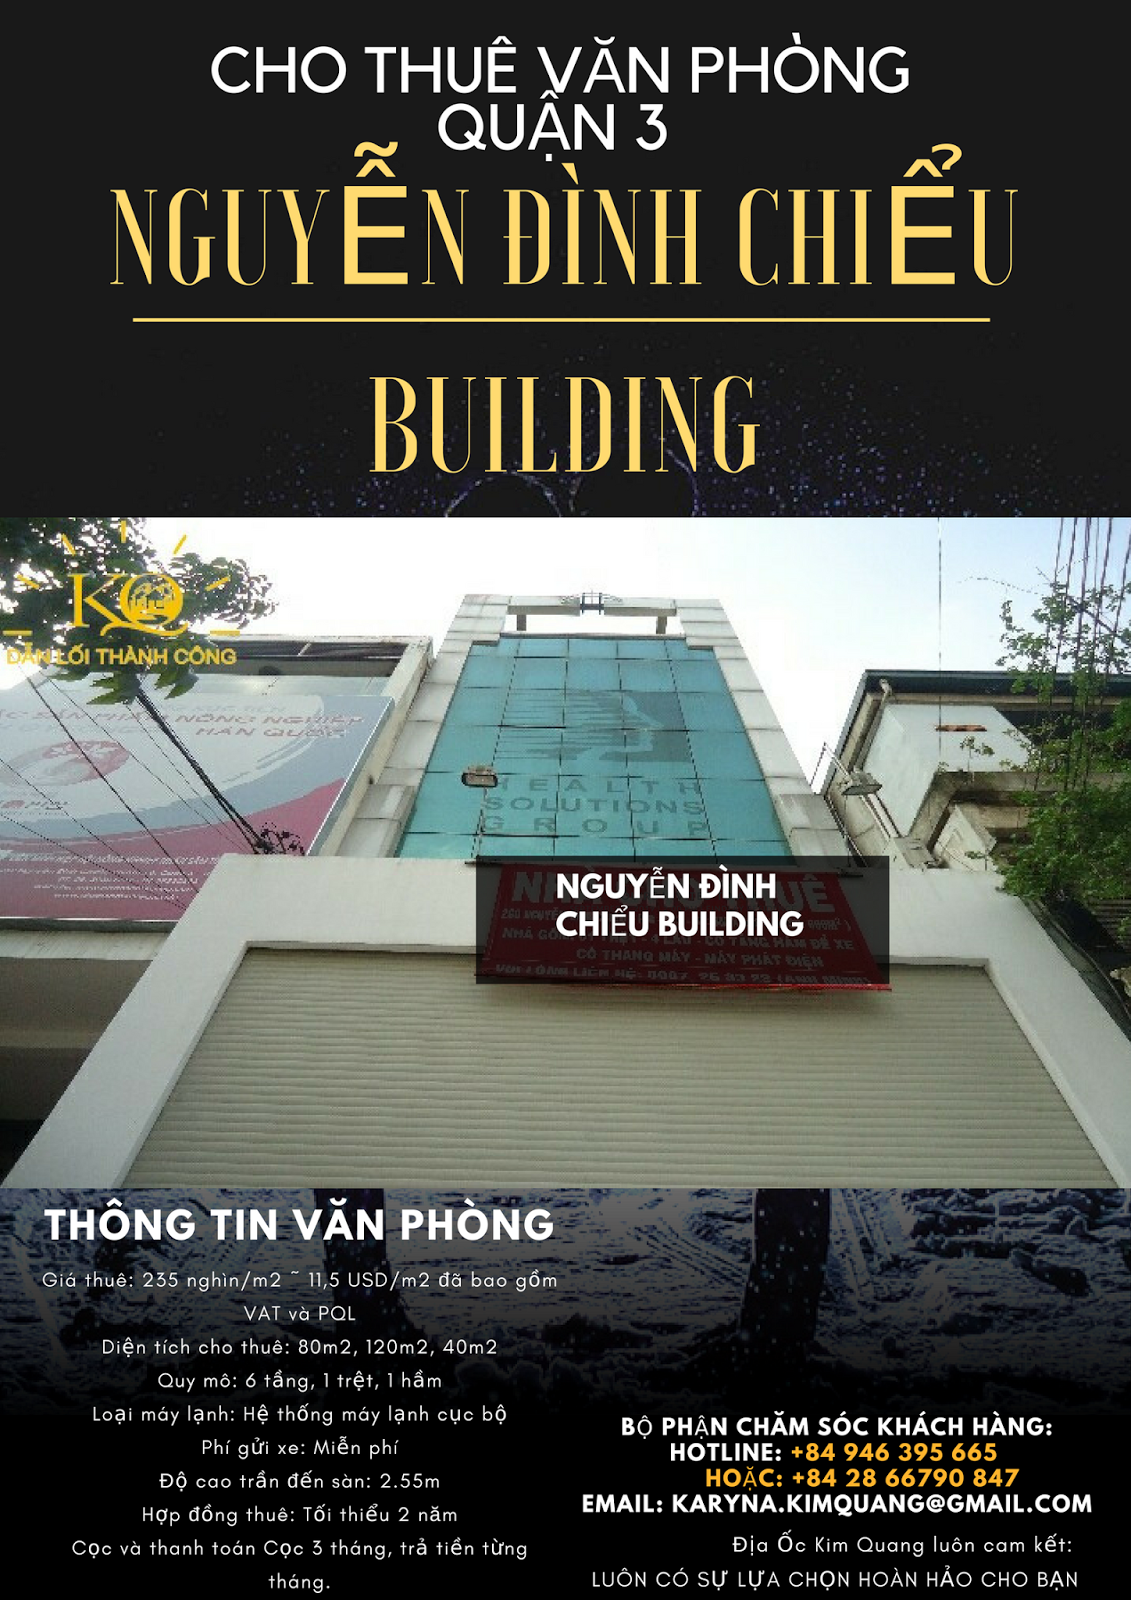 Cho thuê văn phòng quận 3 Nguyễn Đình Chiểu building